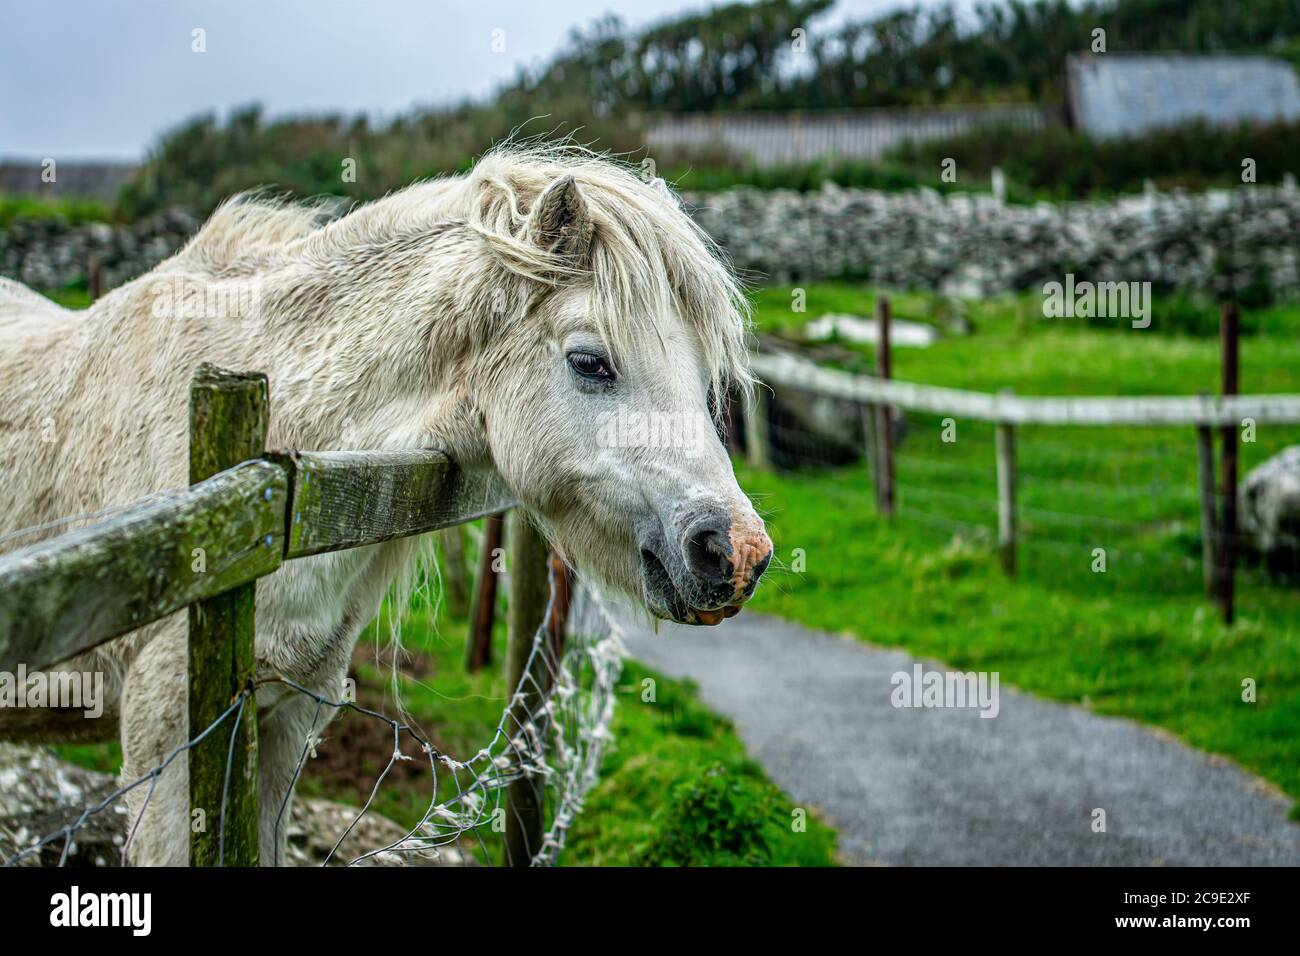 White horse on Irish pasture Stock Photo